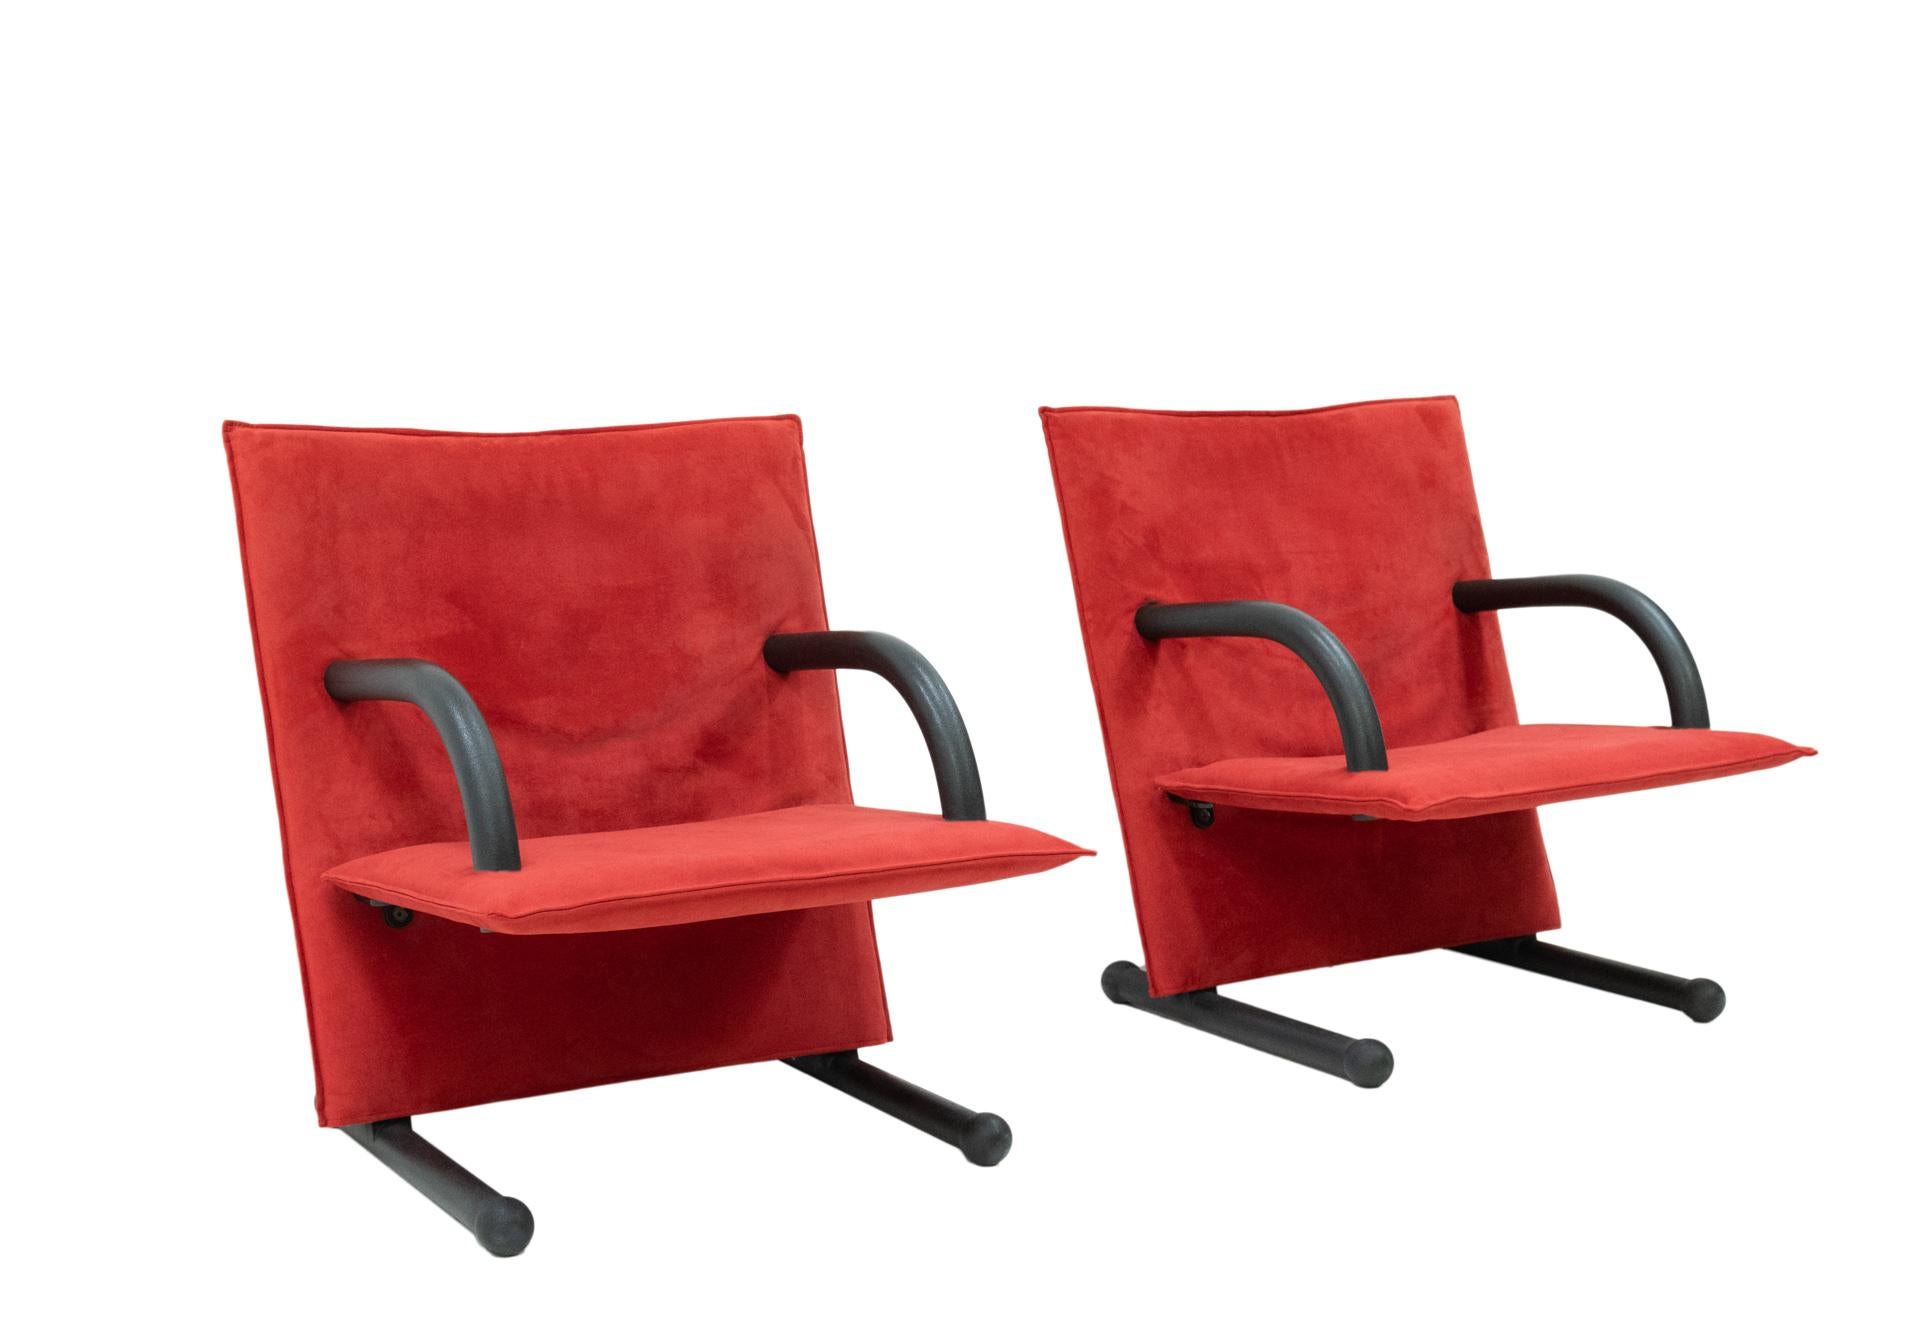 Zwei ikonische Sessel von Arflex Design Burkhard Vogtherr. Model T Linie
Schöne postmoderne Loungesessel. Sehr guter Sitzkomfort. In einer sehr schönen roten Farbe.
Der Alcantara-Stoff auf dem Sitz ist professionell neu gepolstert. Guter